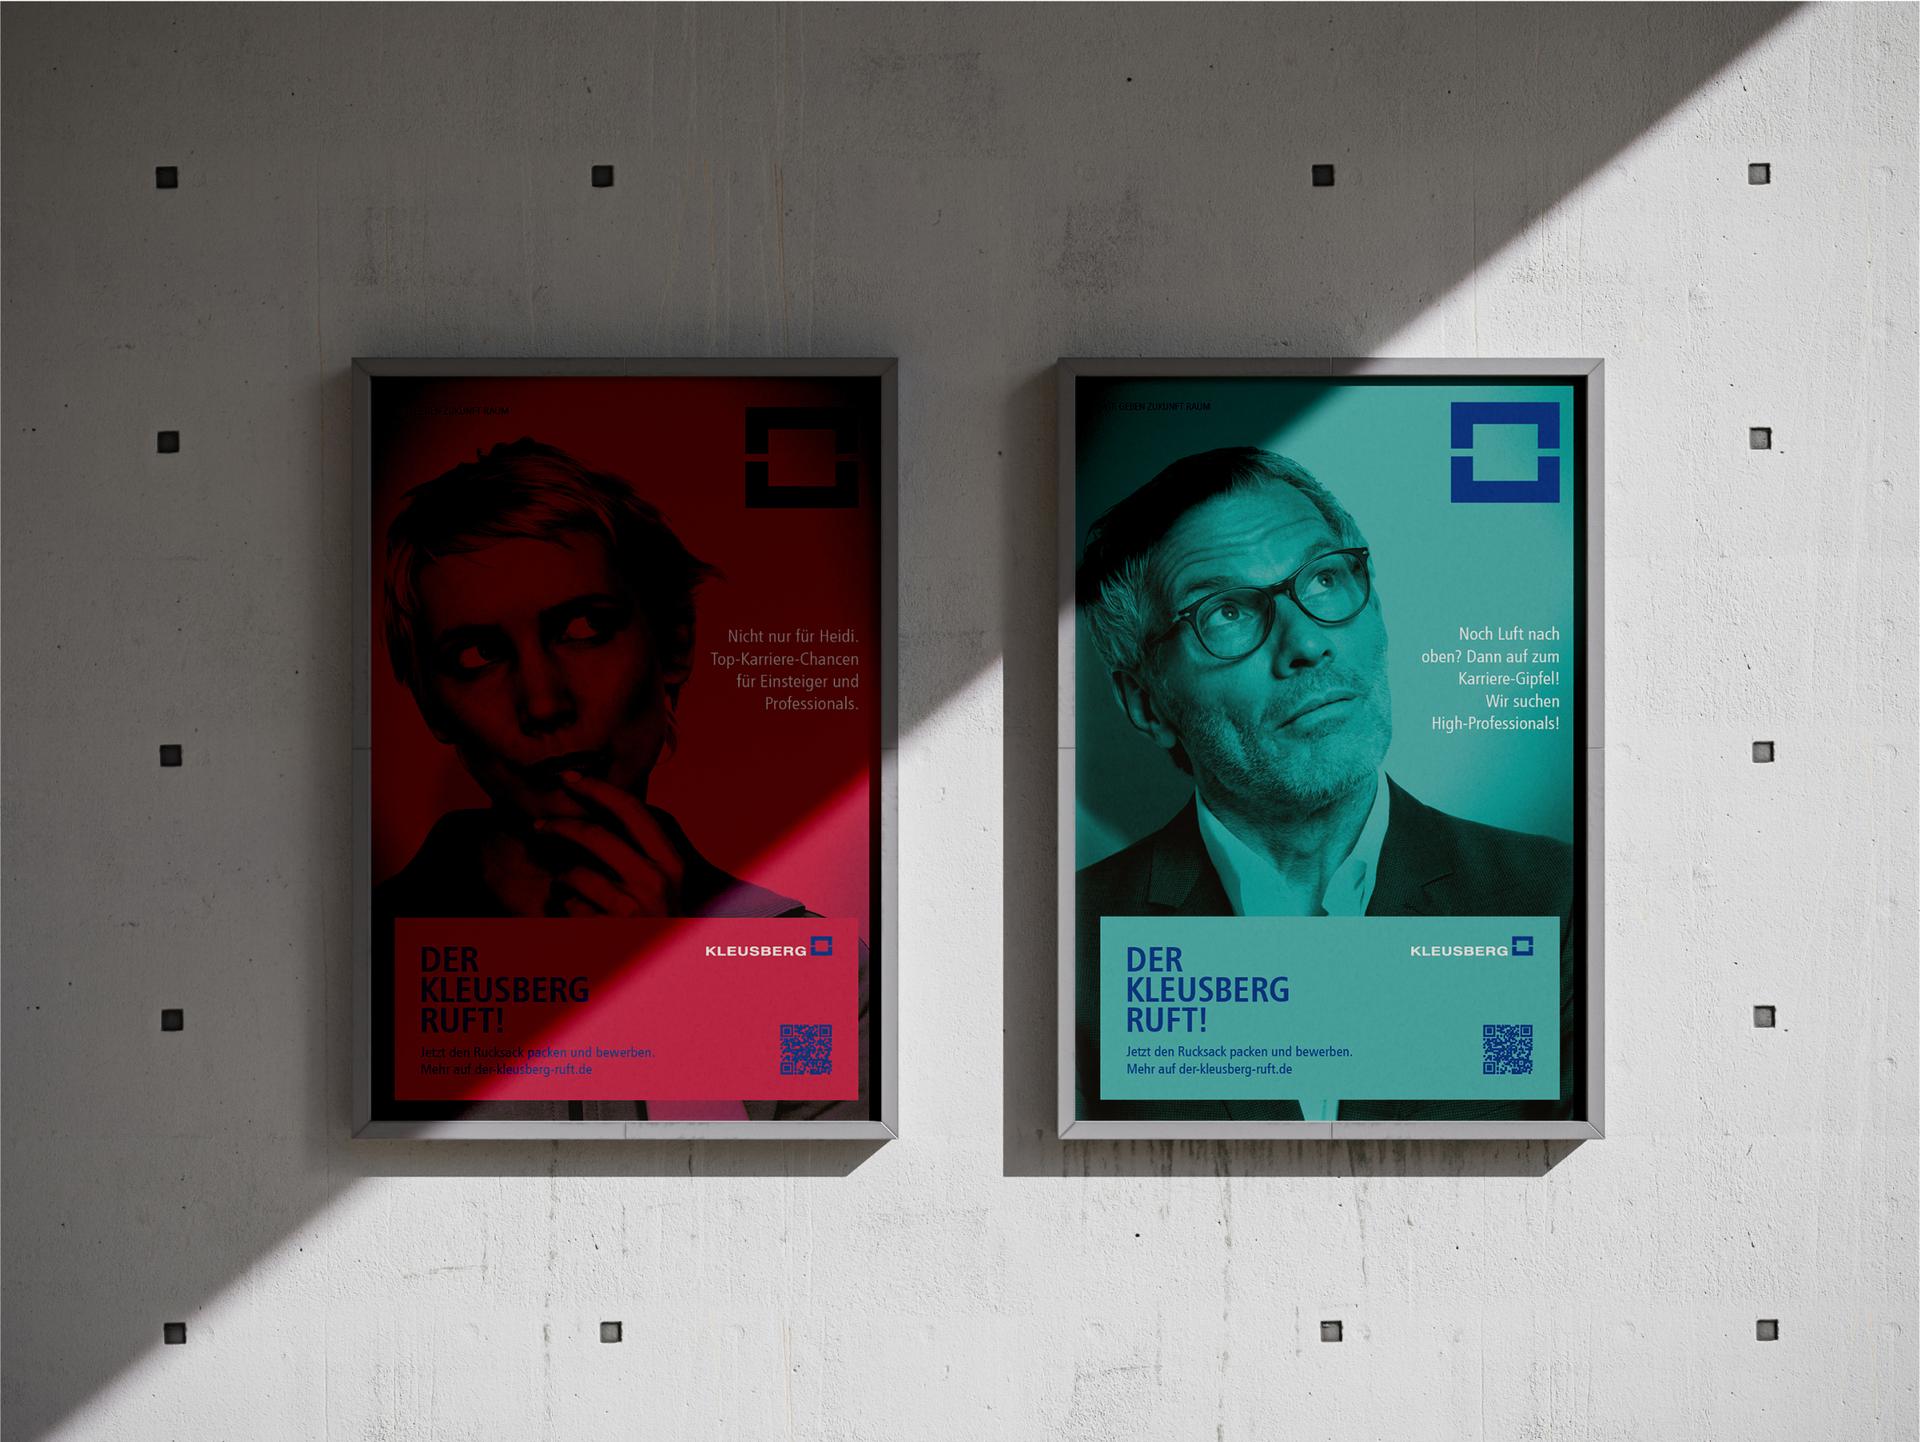 Zwei Anzeigen mit Kampagnen Motiven, die reaze erstellt hat. 